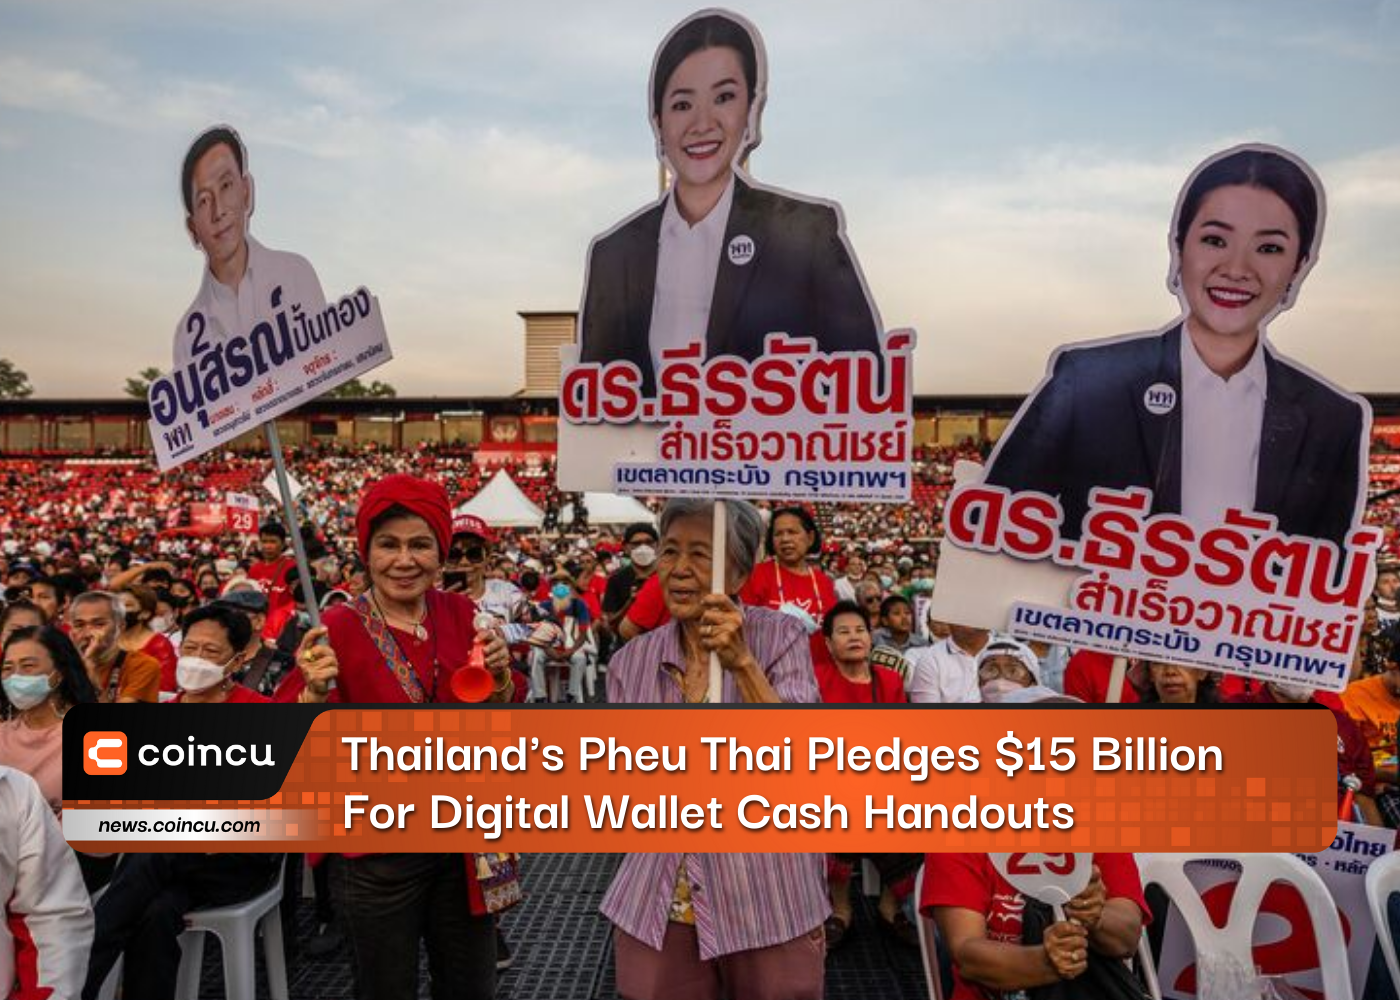 Thailand's Pheu Thai Pledges $15 Billion For Digital Wallet Cash Handouts